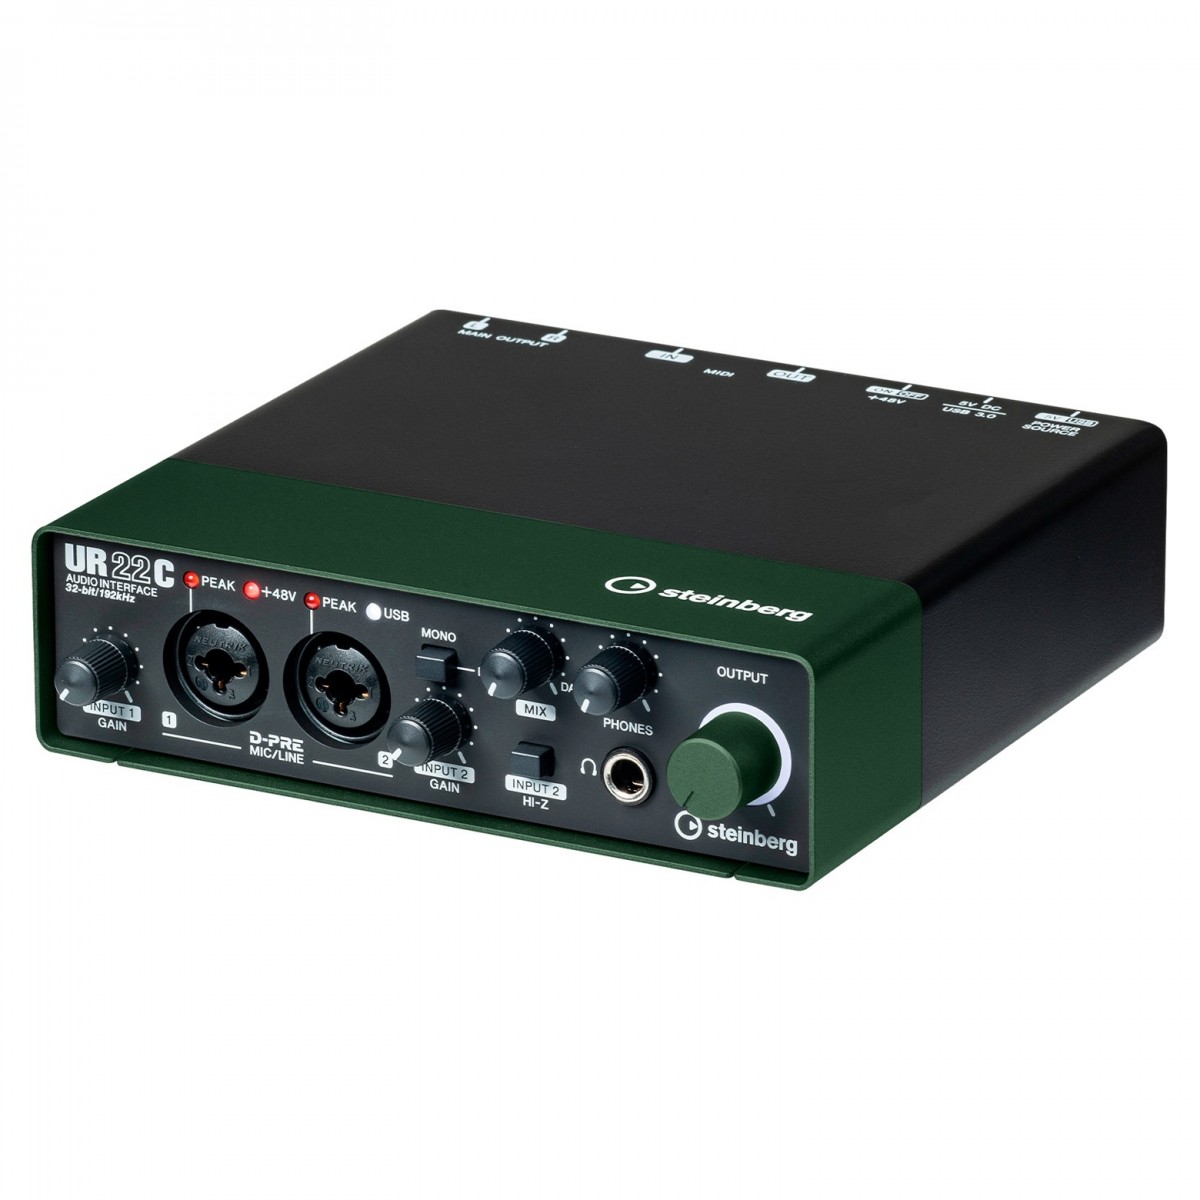 STEINBERG UR22C GREEN INTERFACCIA AUDIO USB 3.0 MIDI 2 CANALI CON D-PRE 24BIT 192Khz COLORE VERDE 1